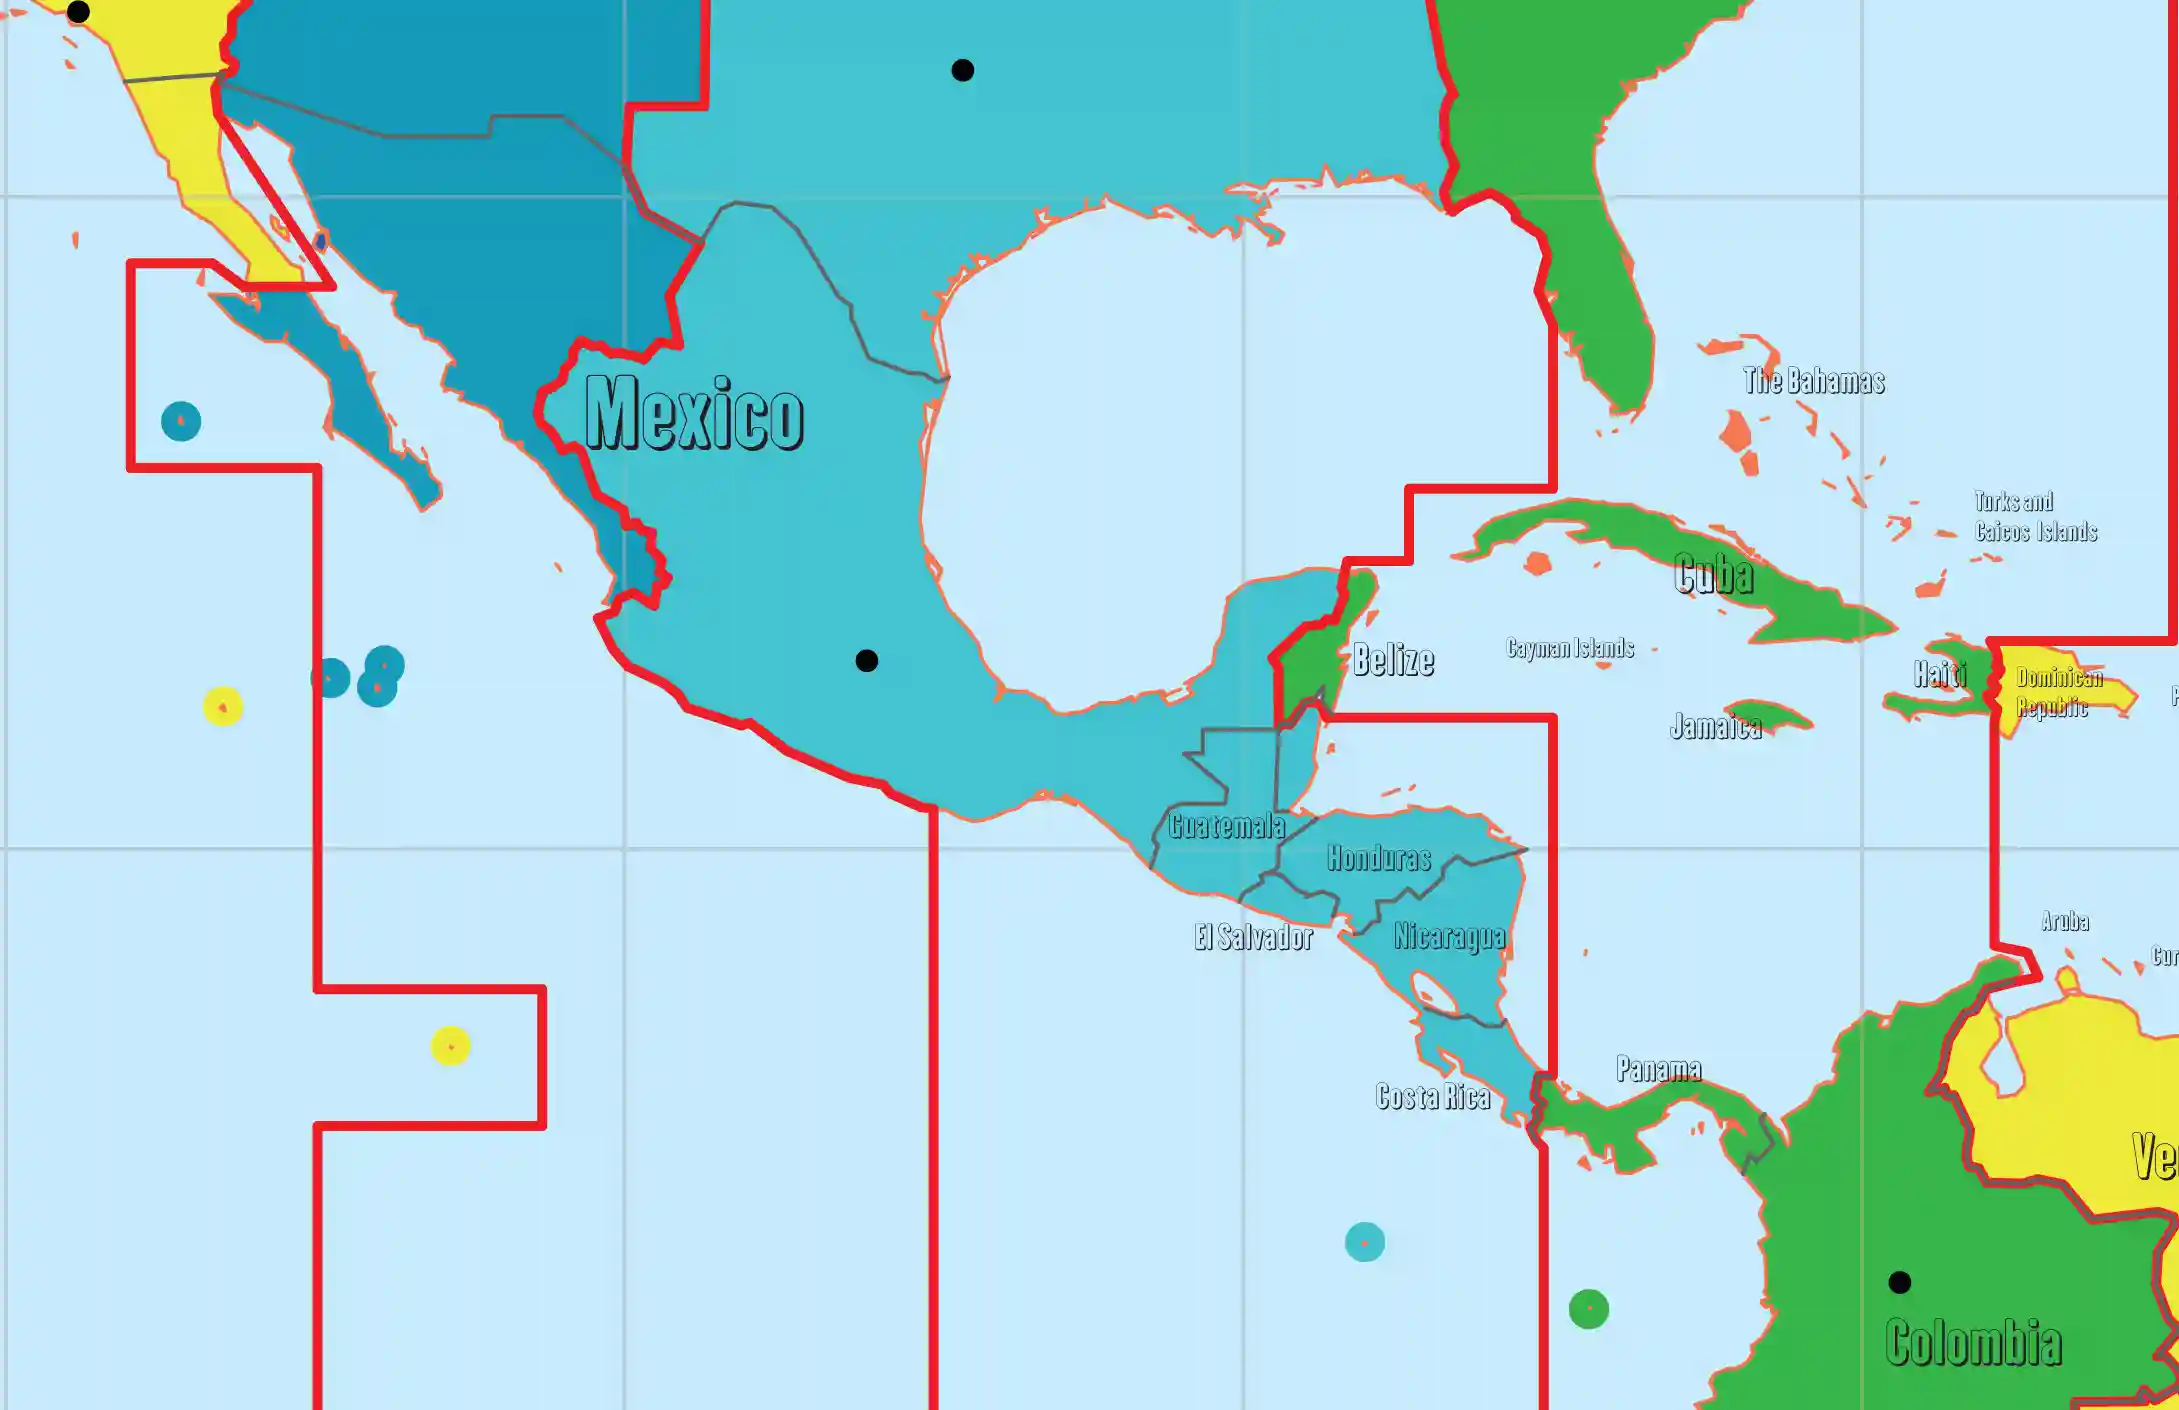 Srednja Amerika karta vremenskih zona